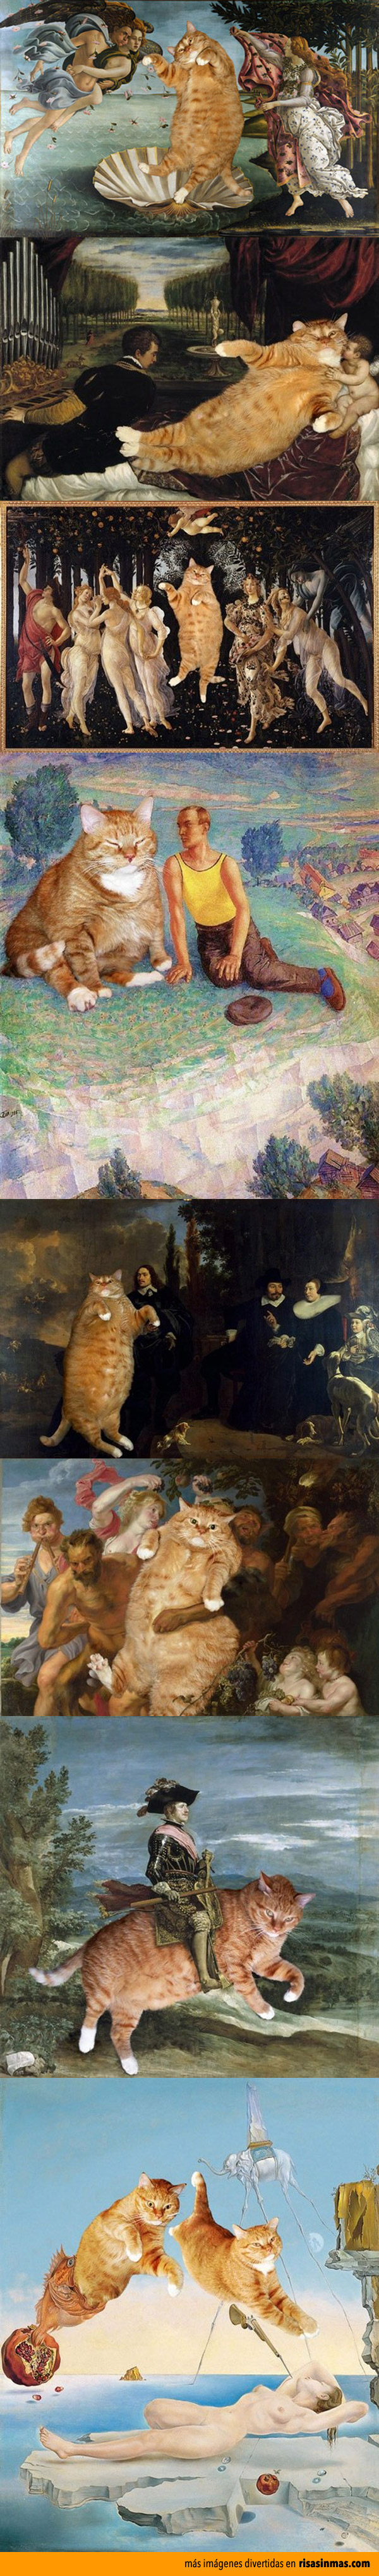 Gatos en obras de arte